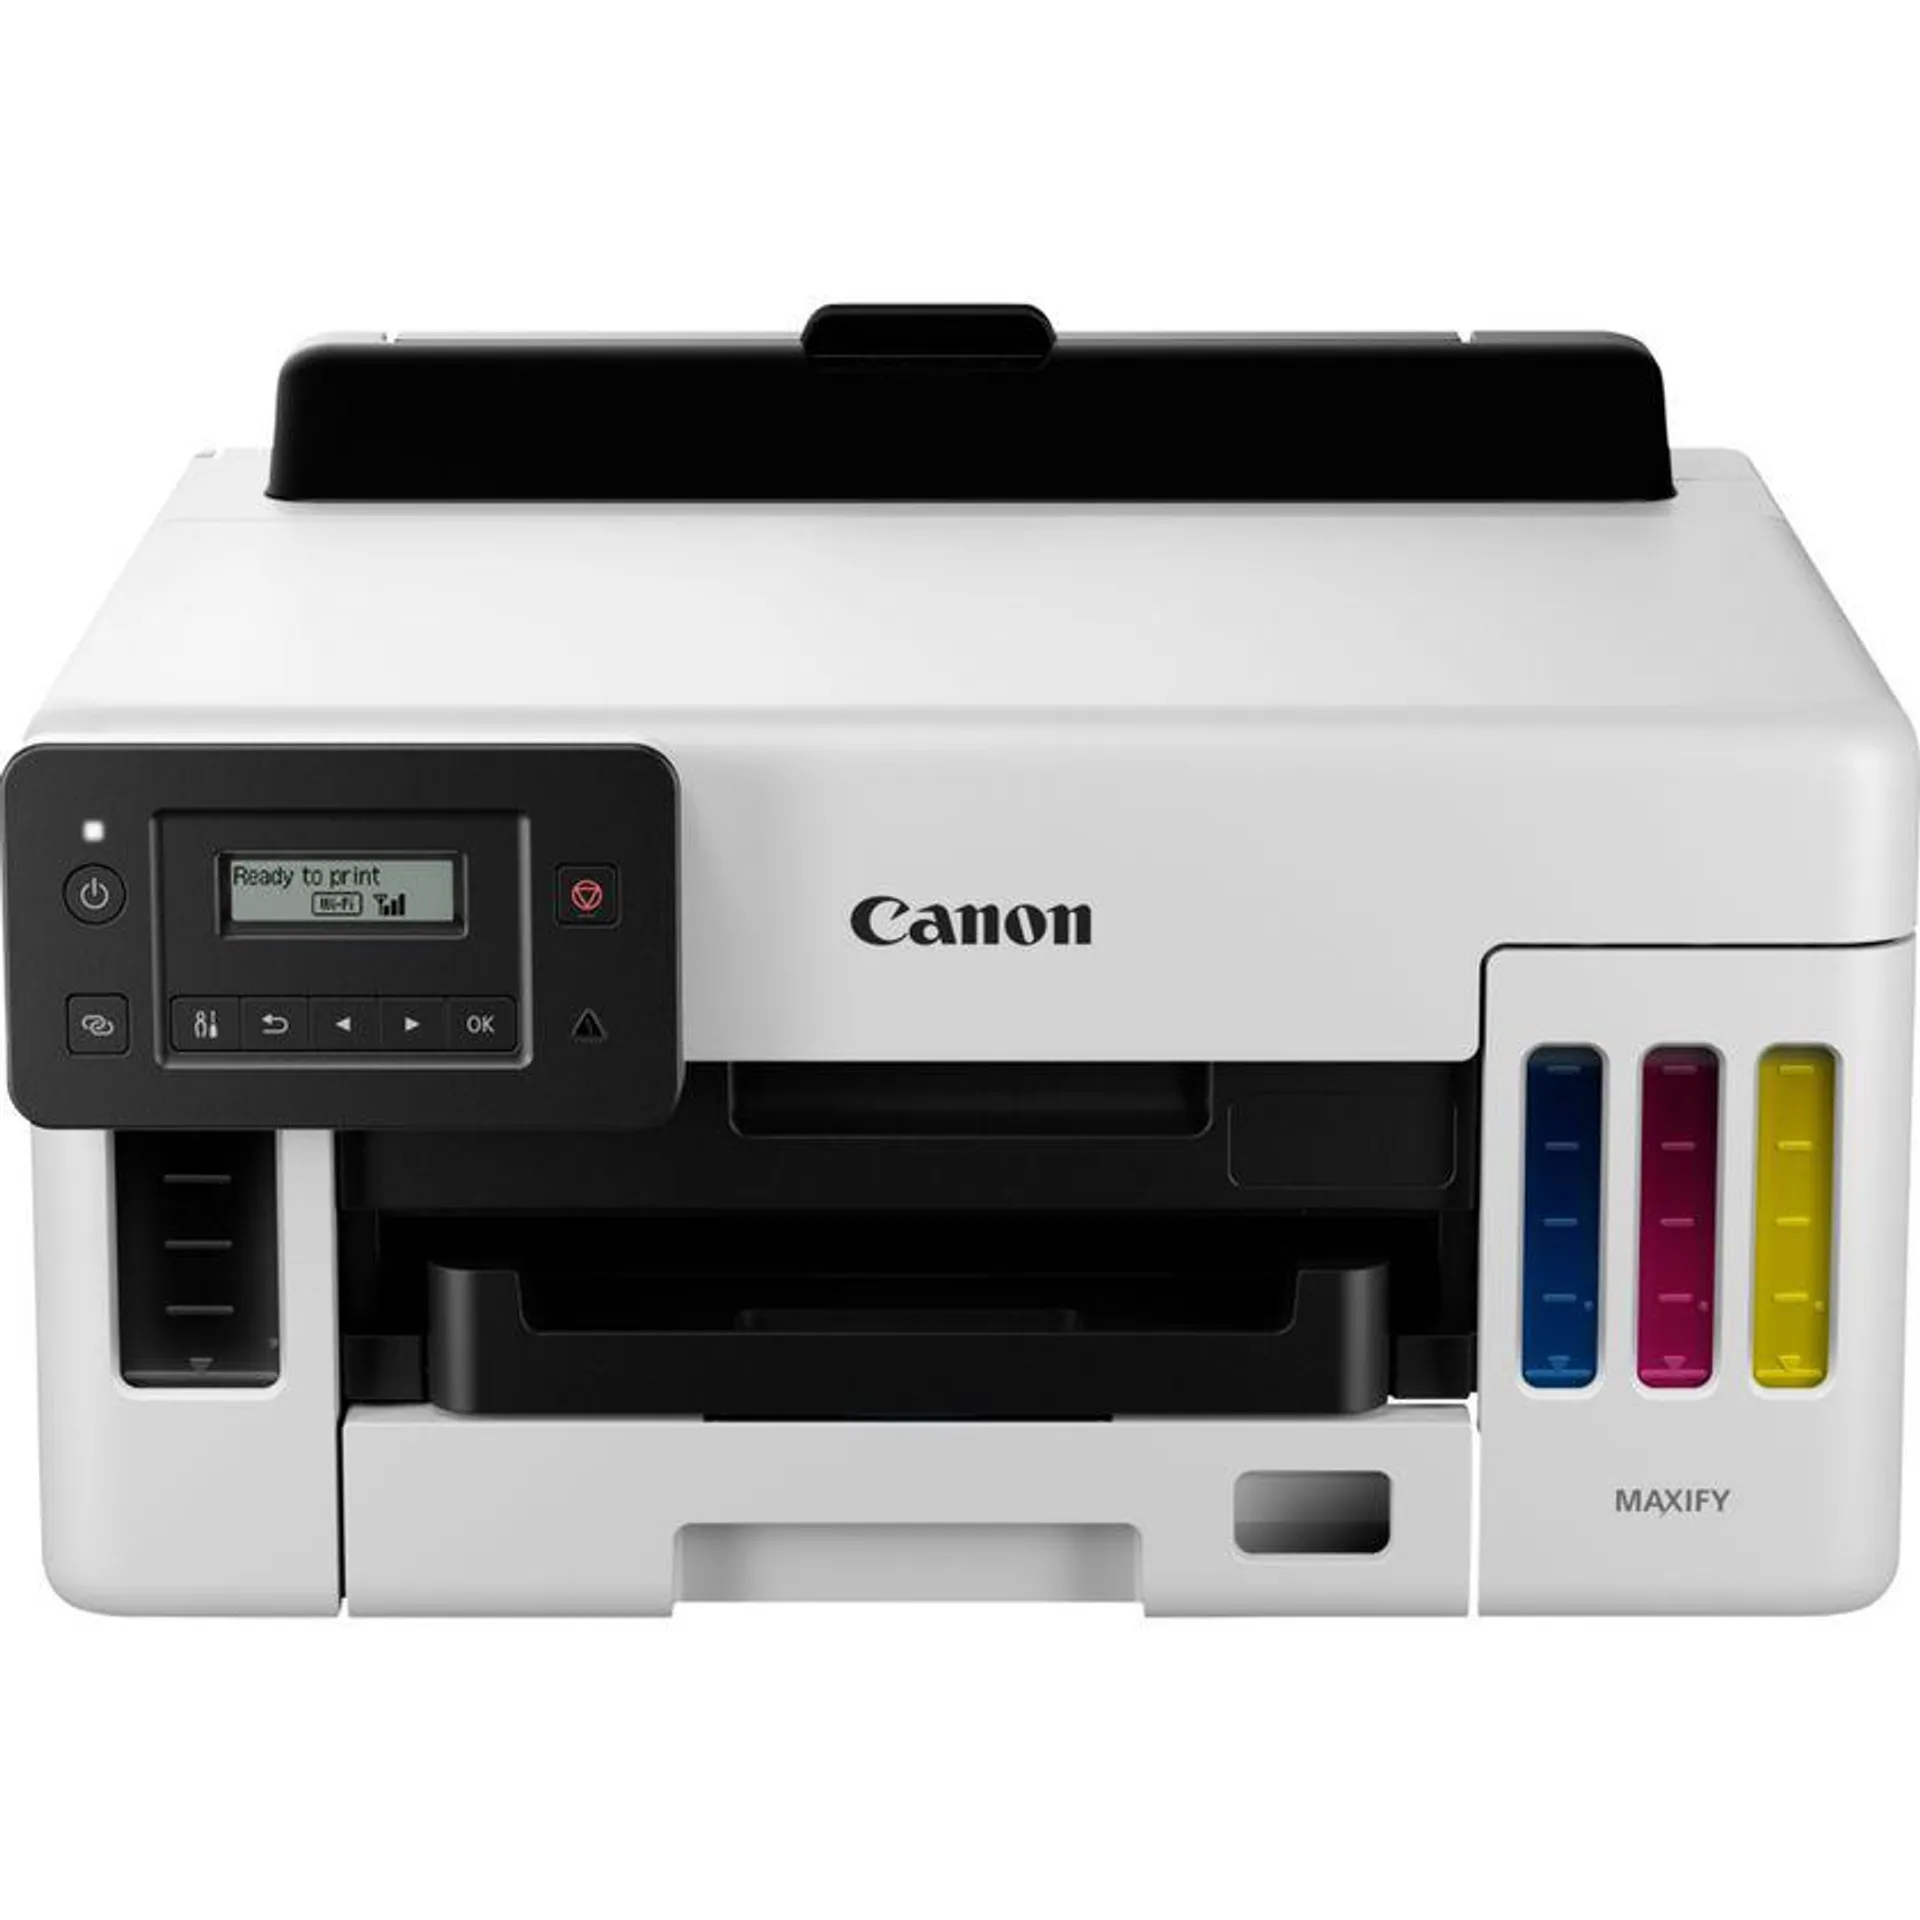 Canon MAXIFY GX5050 MegaTank Tintenstrahldrucker mit nachfüllbaren Tintentanks und WLAN